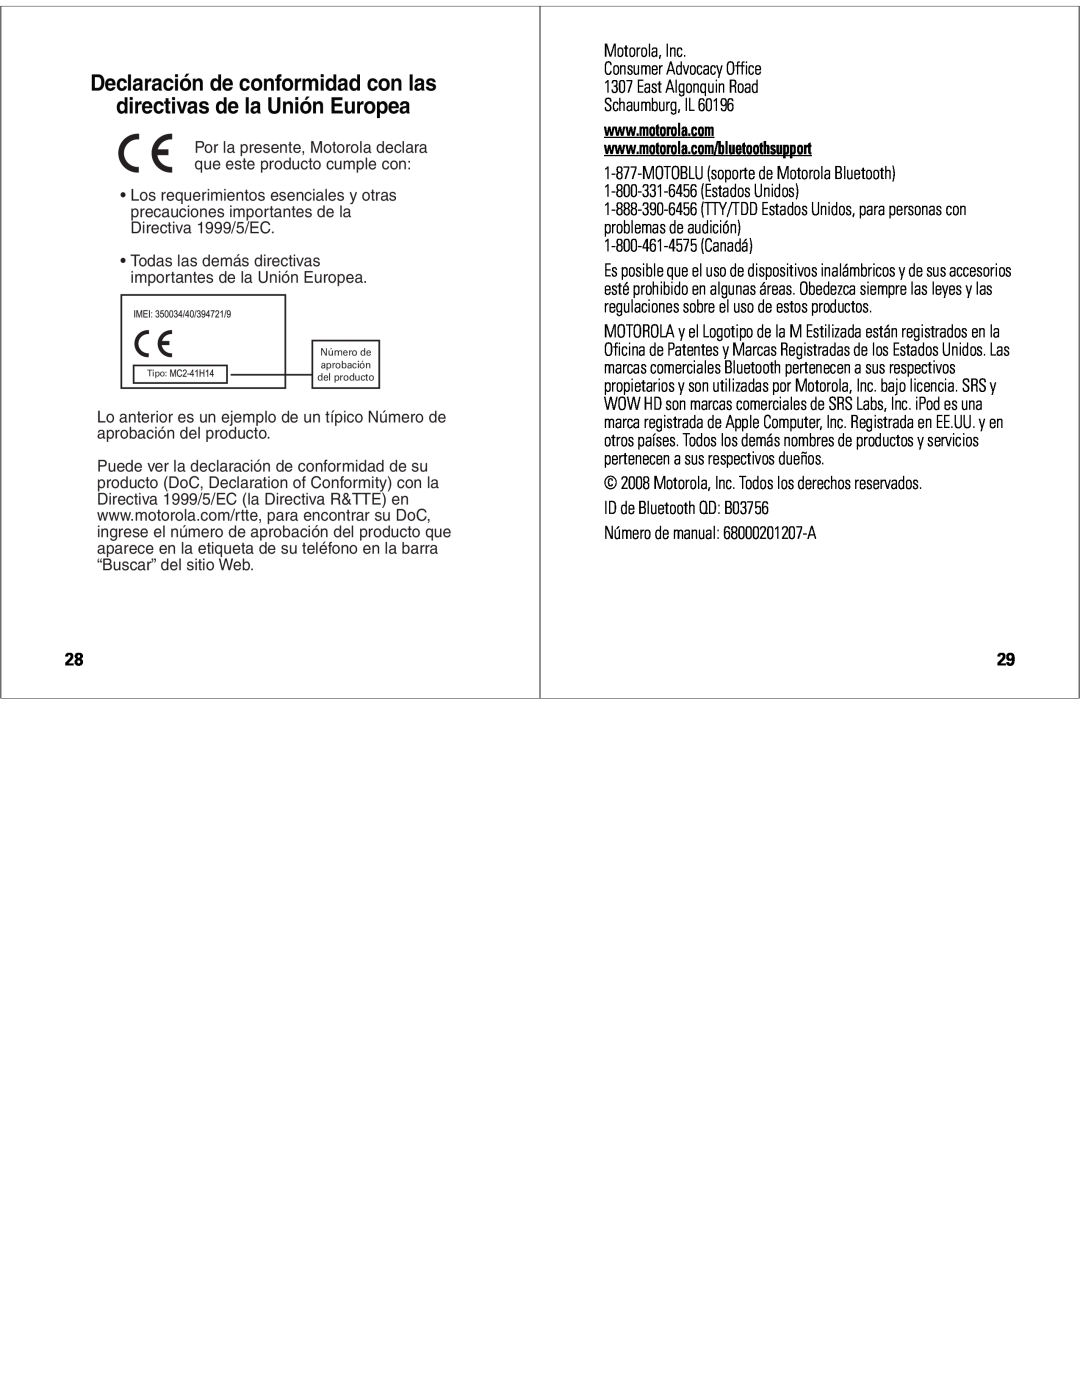 Motorola S9-HD Declaración de conformidad con las, directivas de la Unión Europea, Motorola, Inc Consumer Advocacy Office 